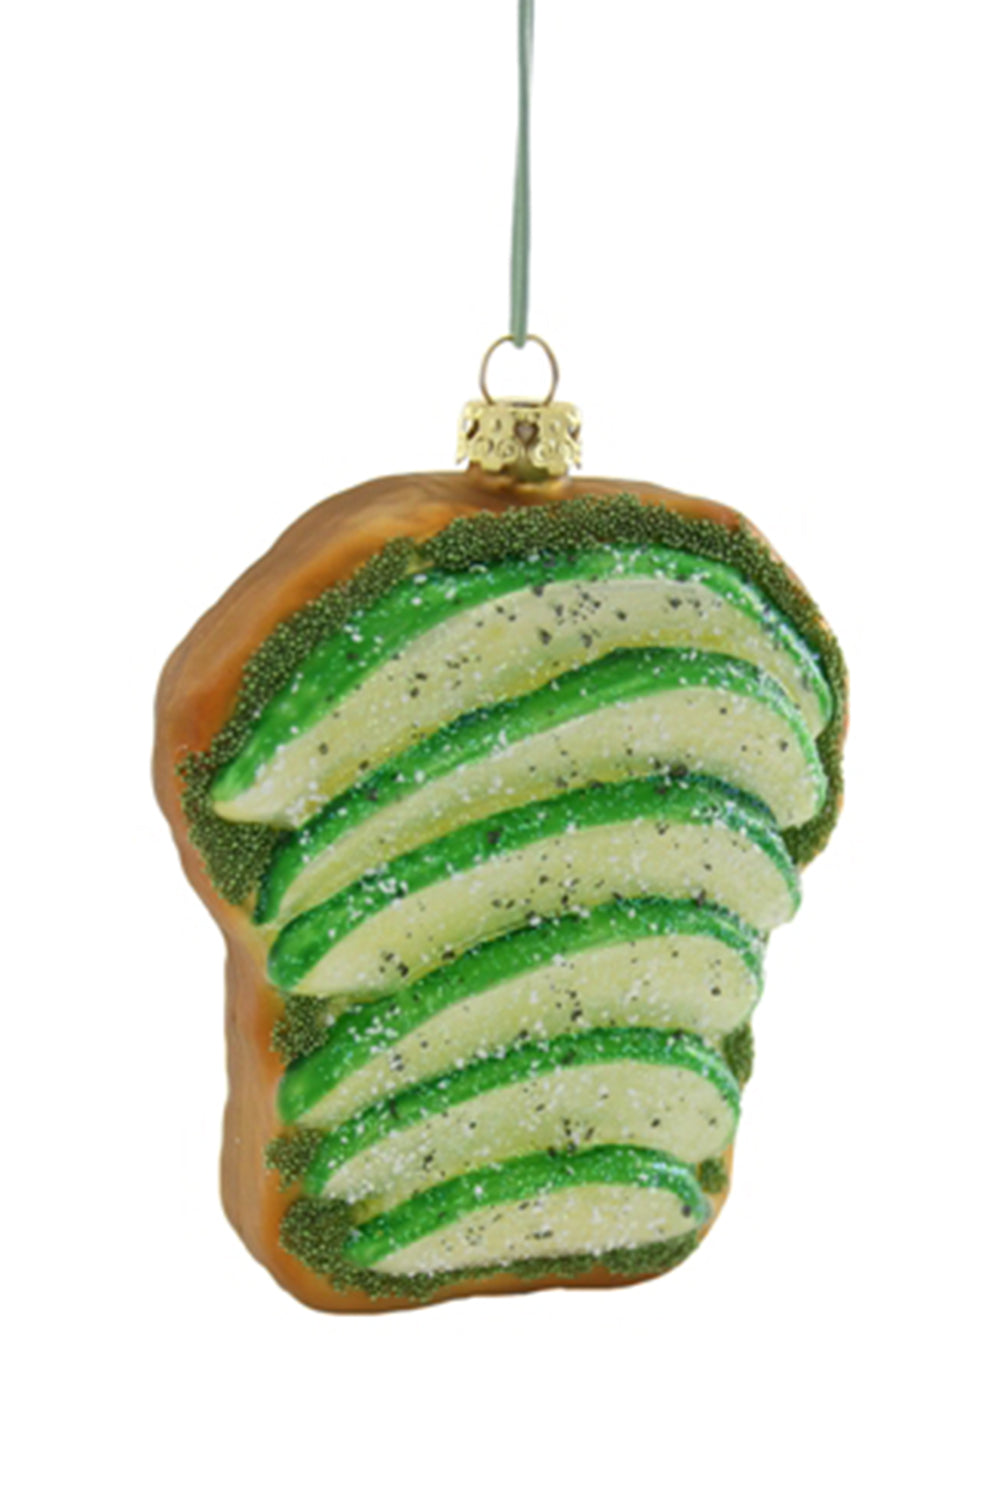 Glass Ornament - Avocado Toast